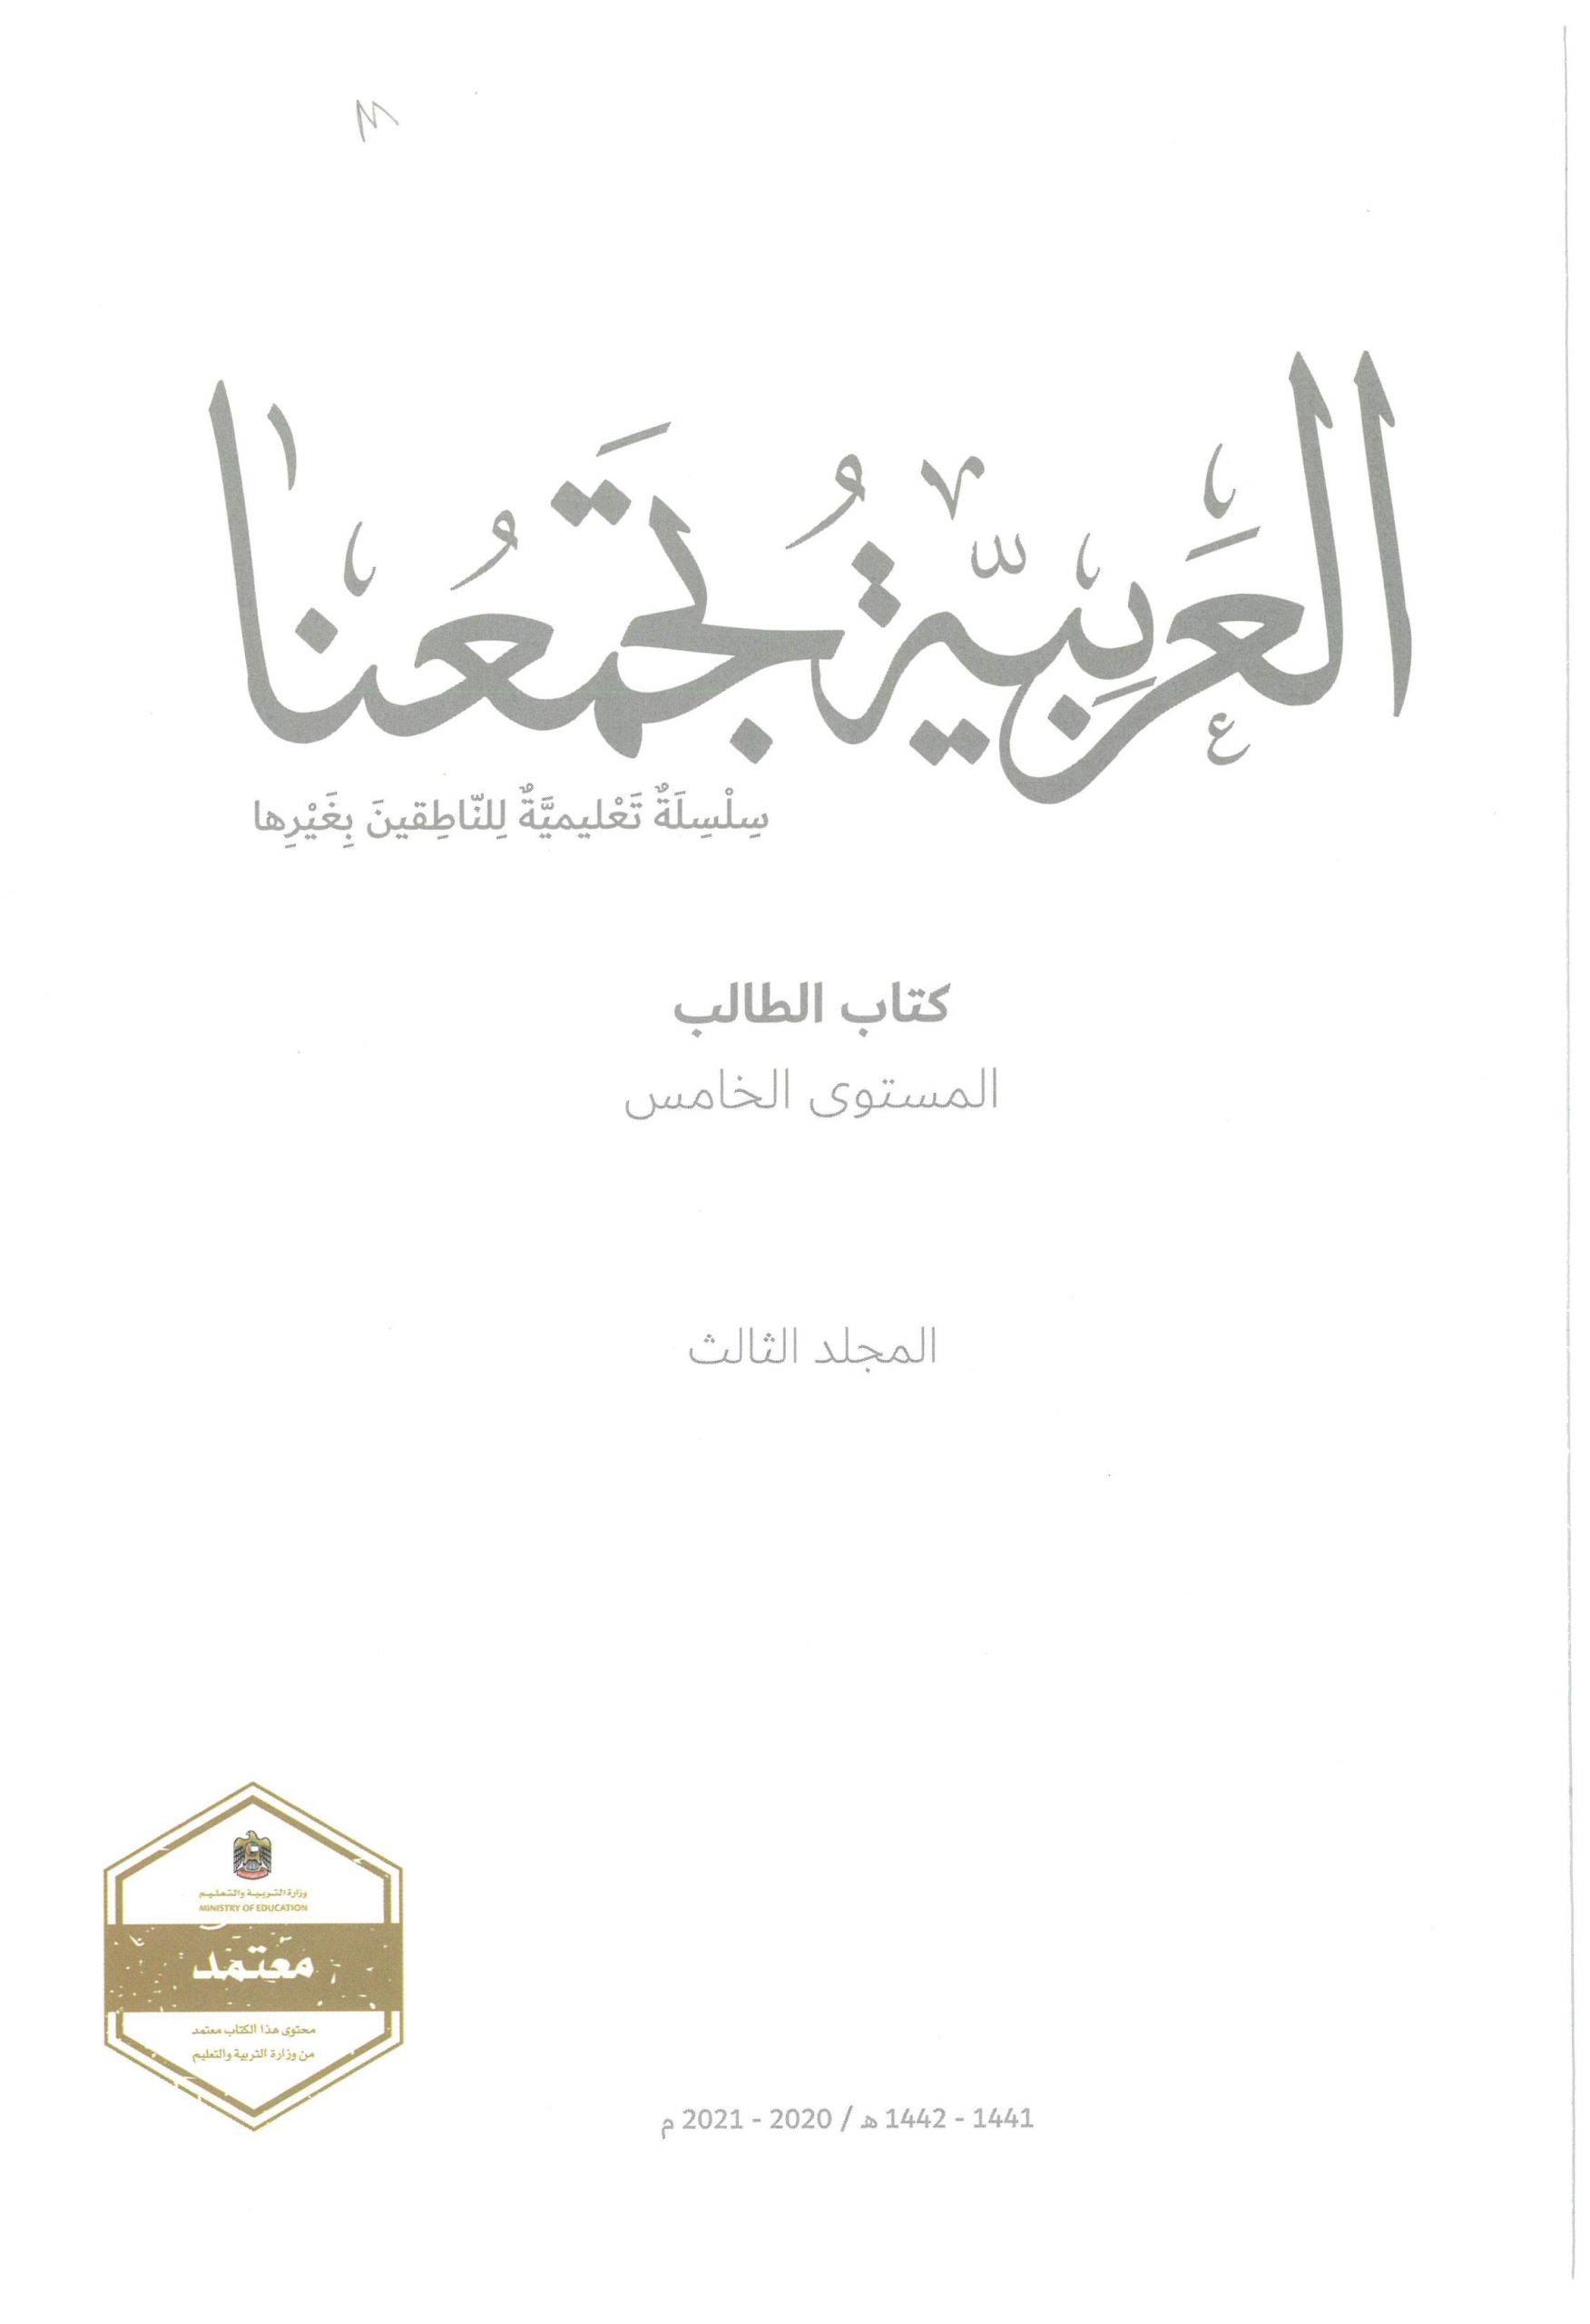 كتاب الطالب لغير الناطقين بها الفصل الدراسي الثالث 2020-2021 الصف الخامس مادة اللغة العربية